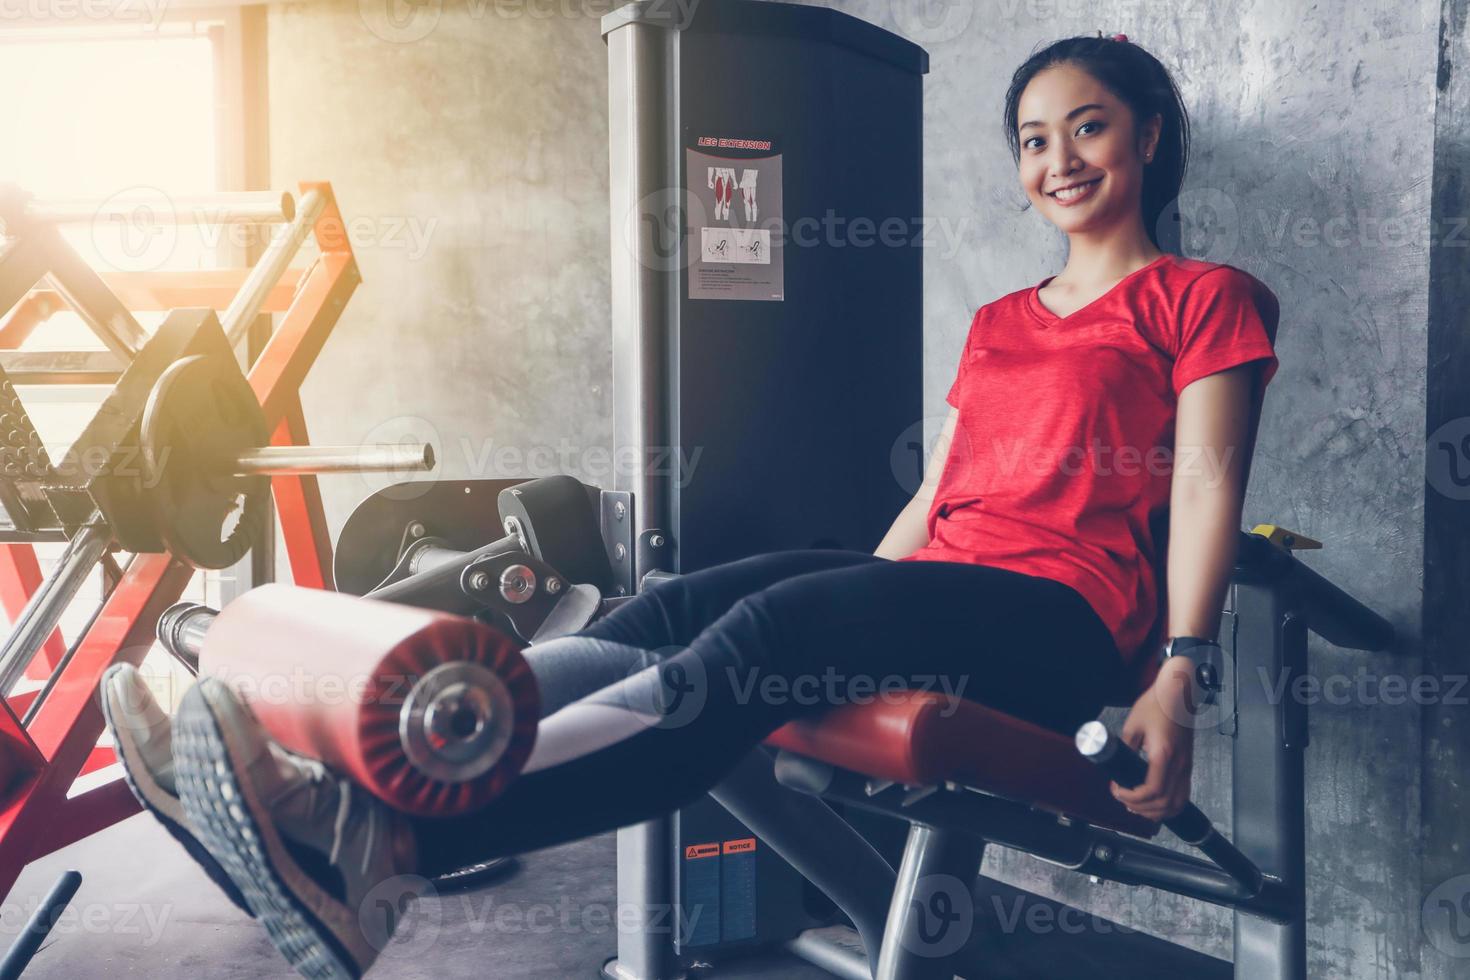 linda musculoso apto mulher exercitando construção de músculos e fitness mulher fazendo exercícios no ginásio. fitness - conceito de estilo de vida saudável foto